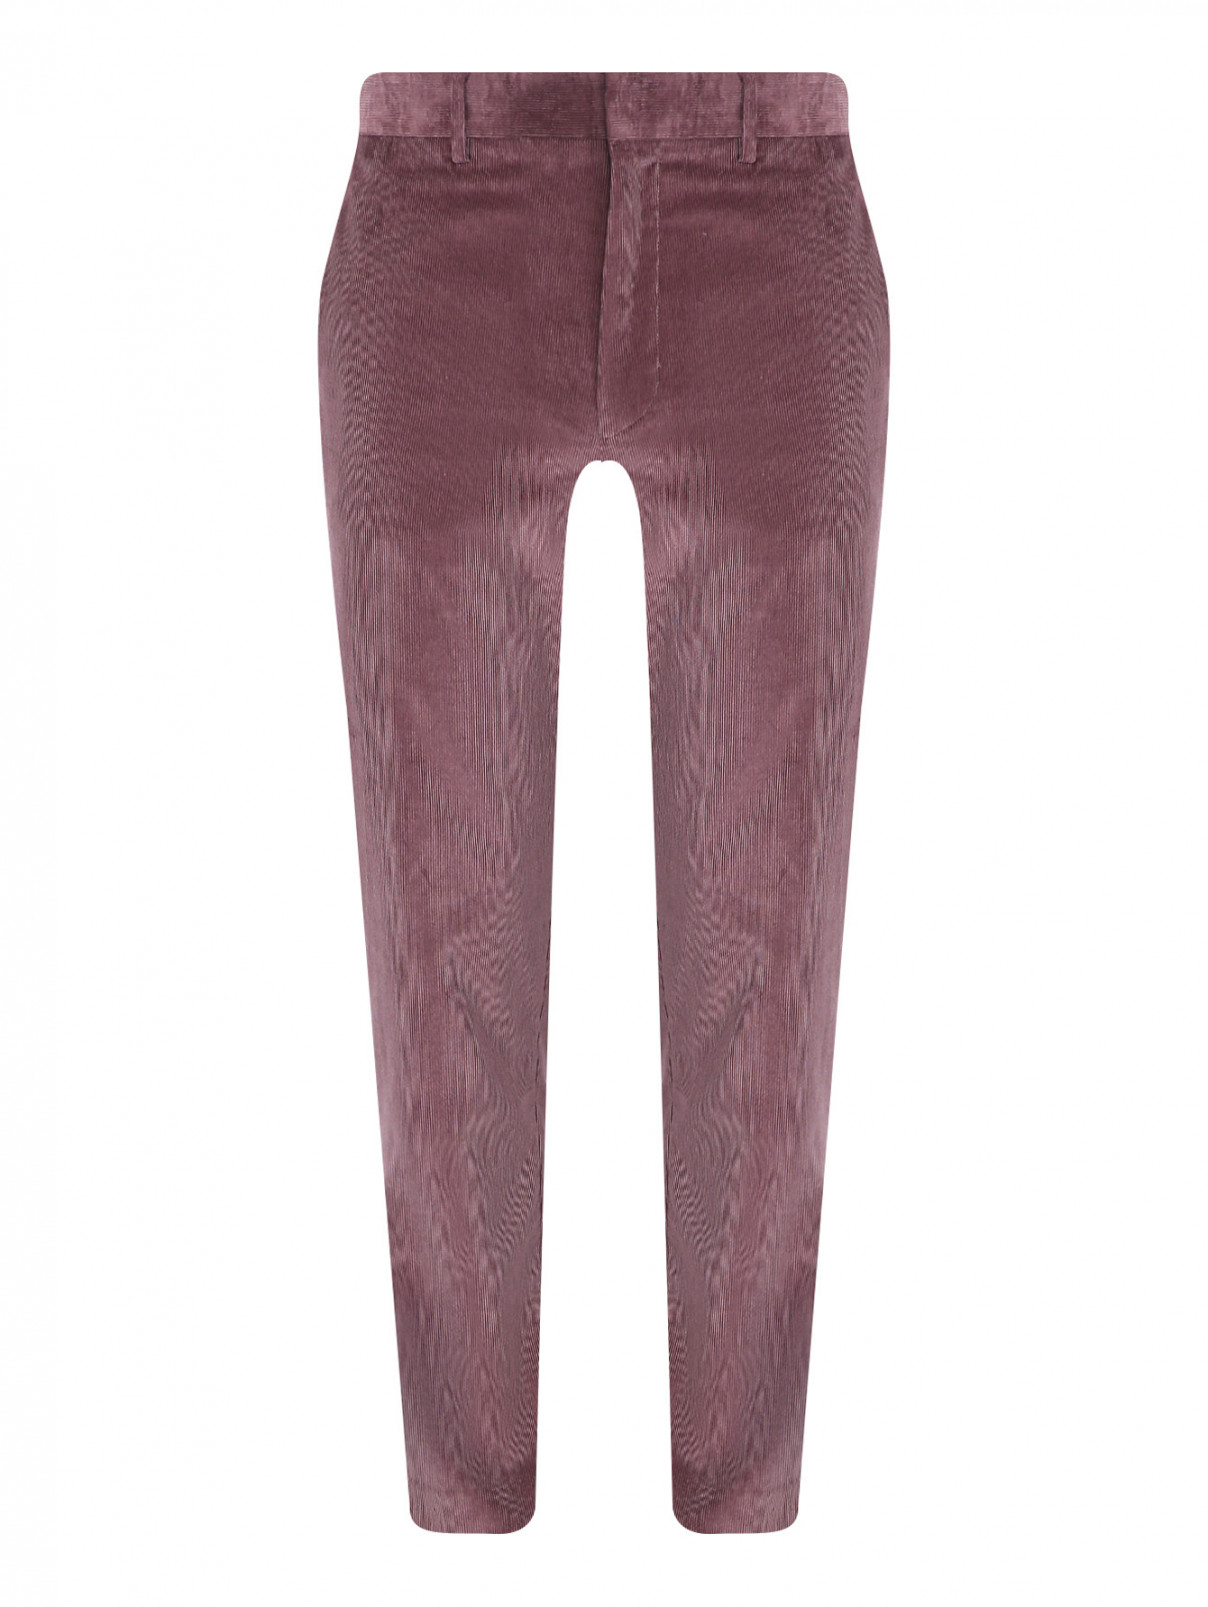 Вельветовые брюки с карманами Paul Smith  –  Общий вид  – Цвет:  Фиолетовый